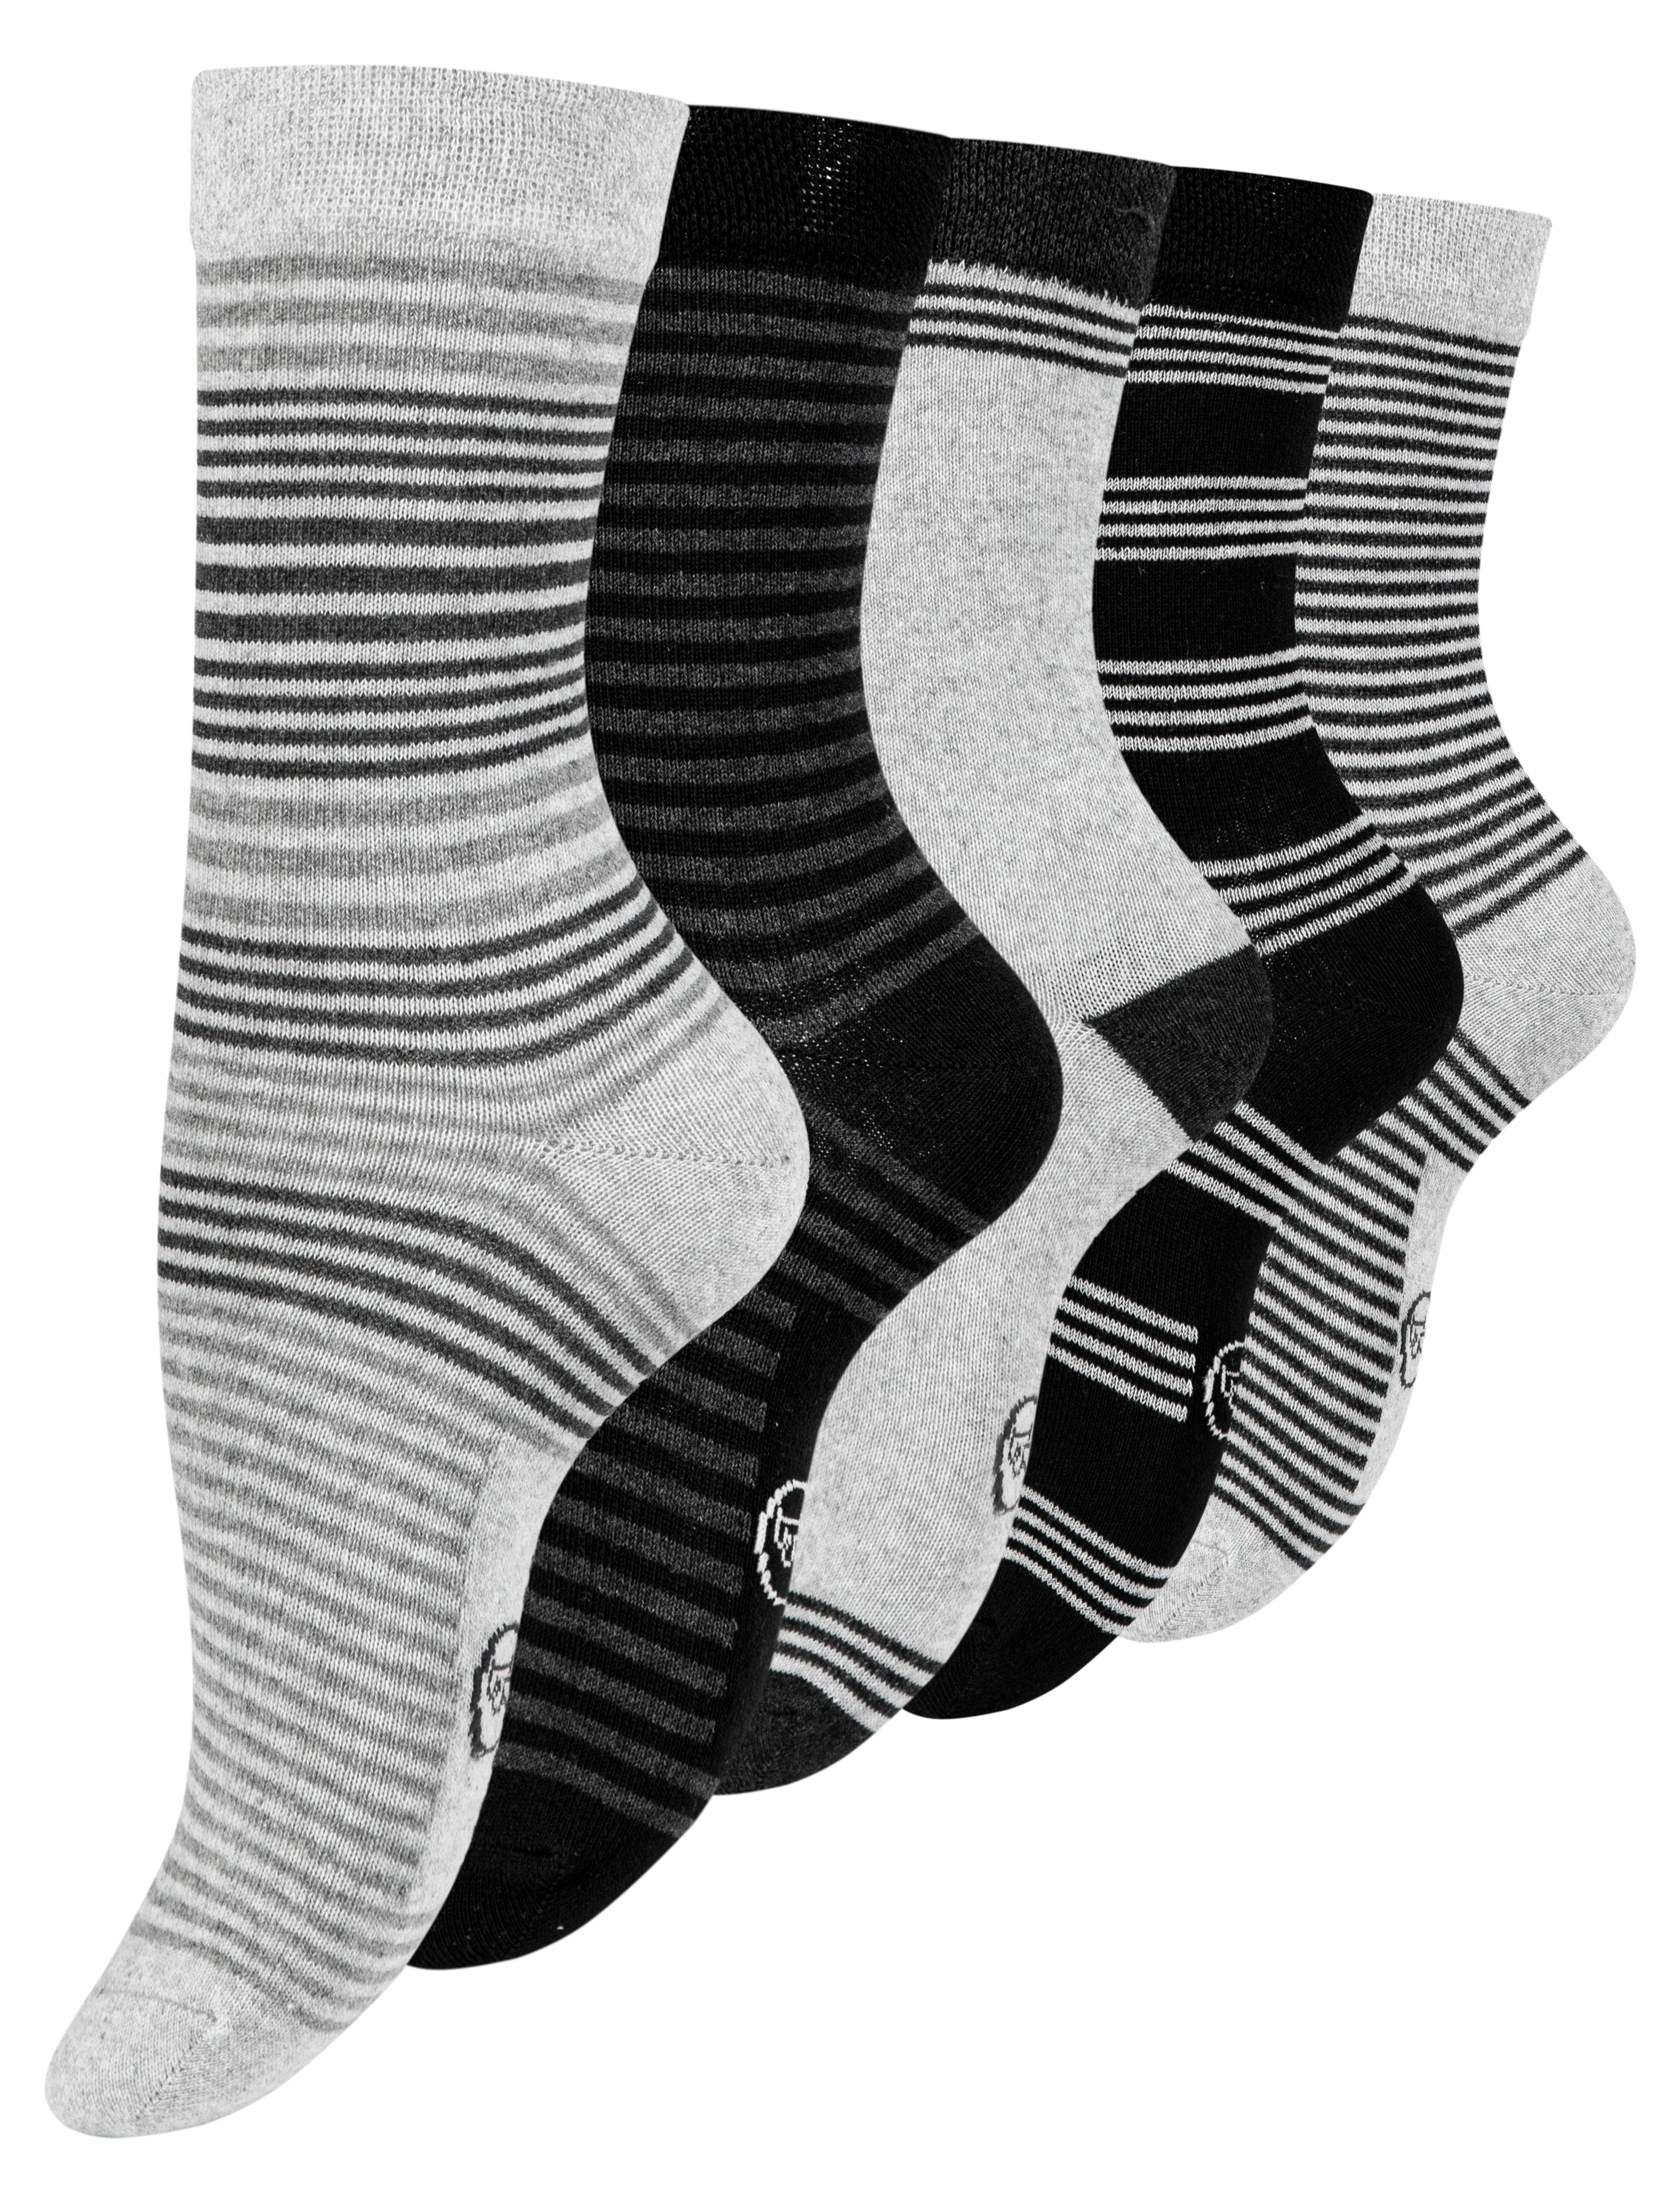 Paolo Renzo® Damen Baumwoll Socken "DOT STRIPE" 5/10 oder 15 Paar - Größen 35/38 und 39/42